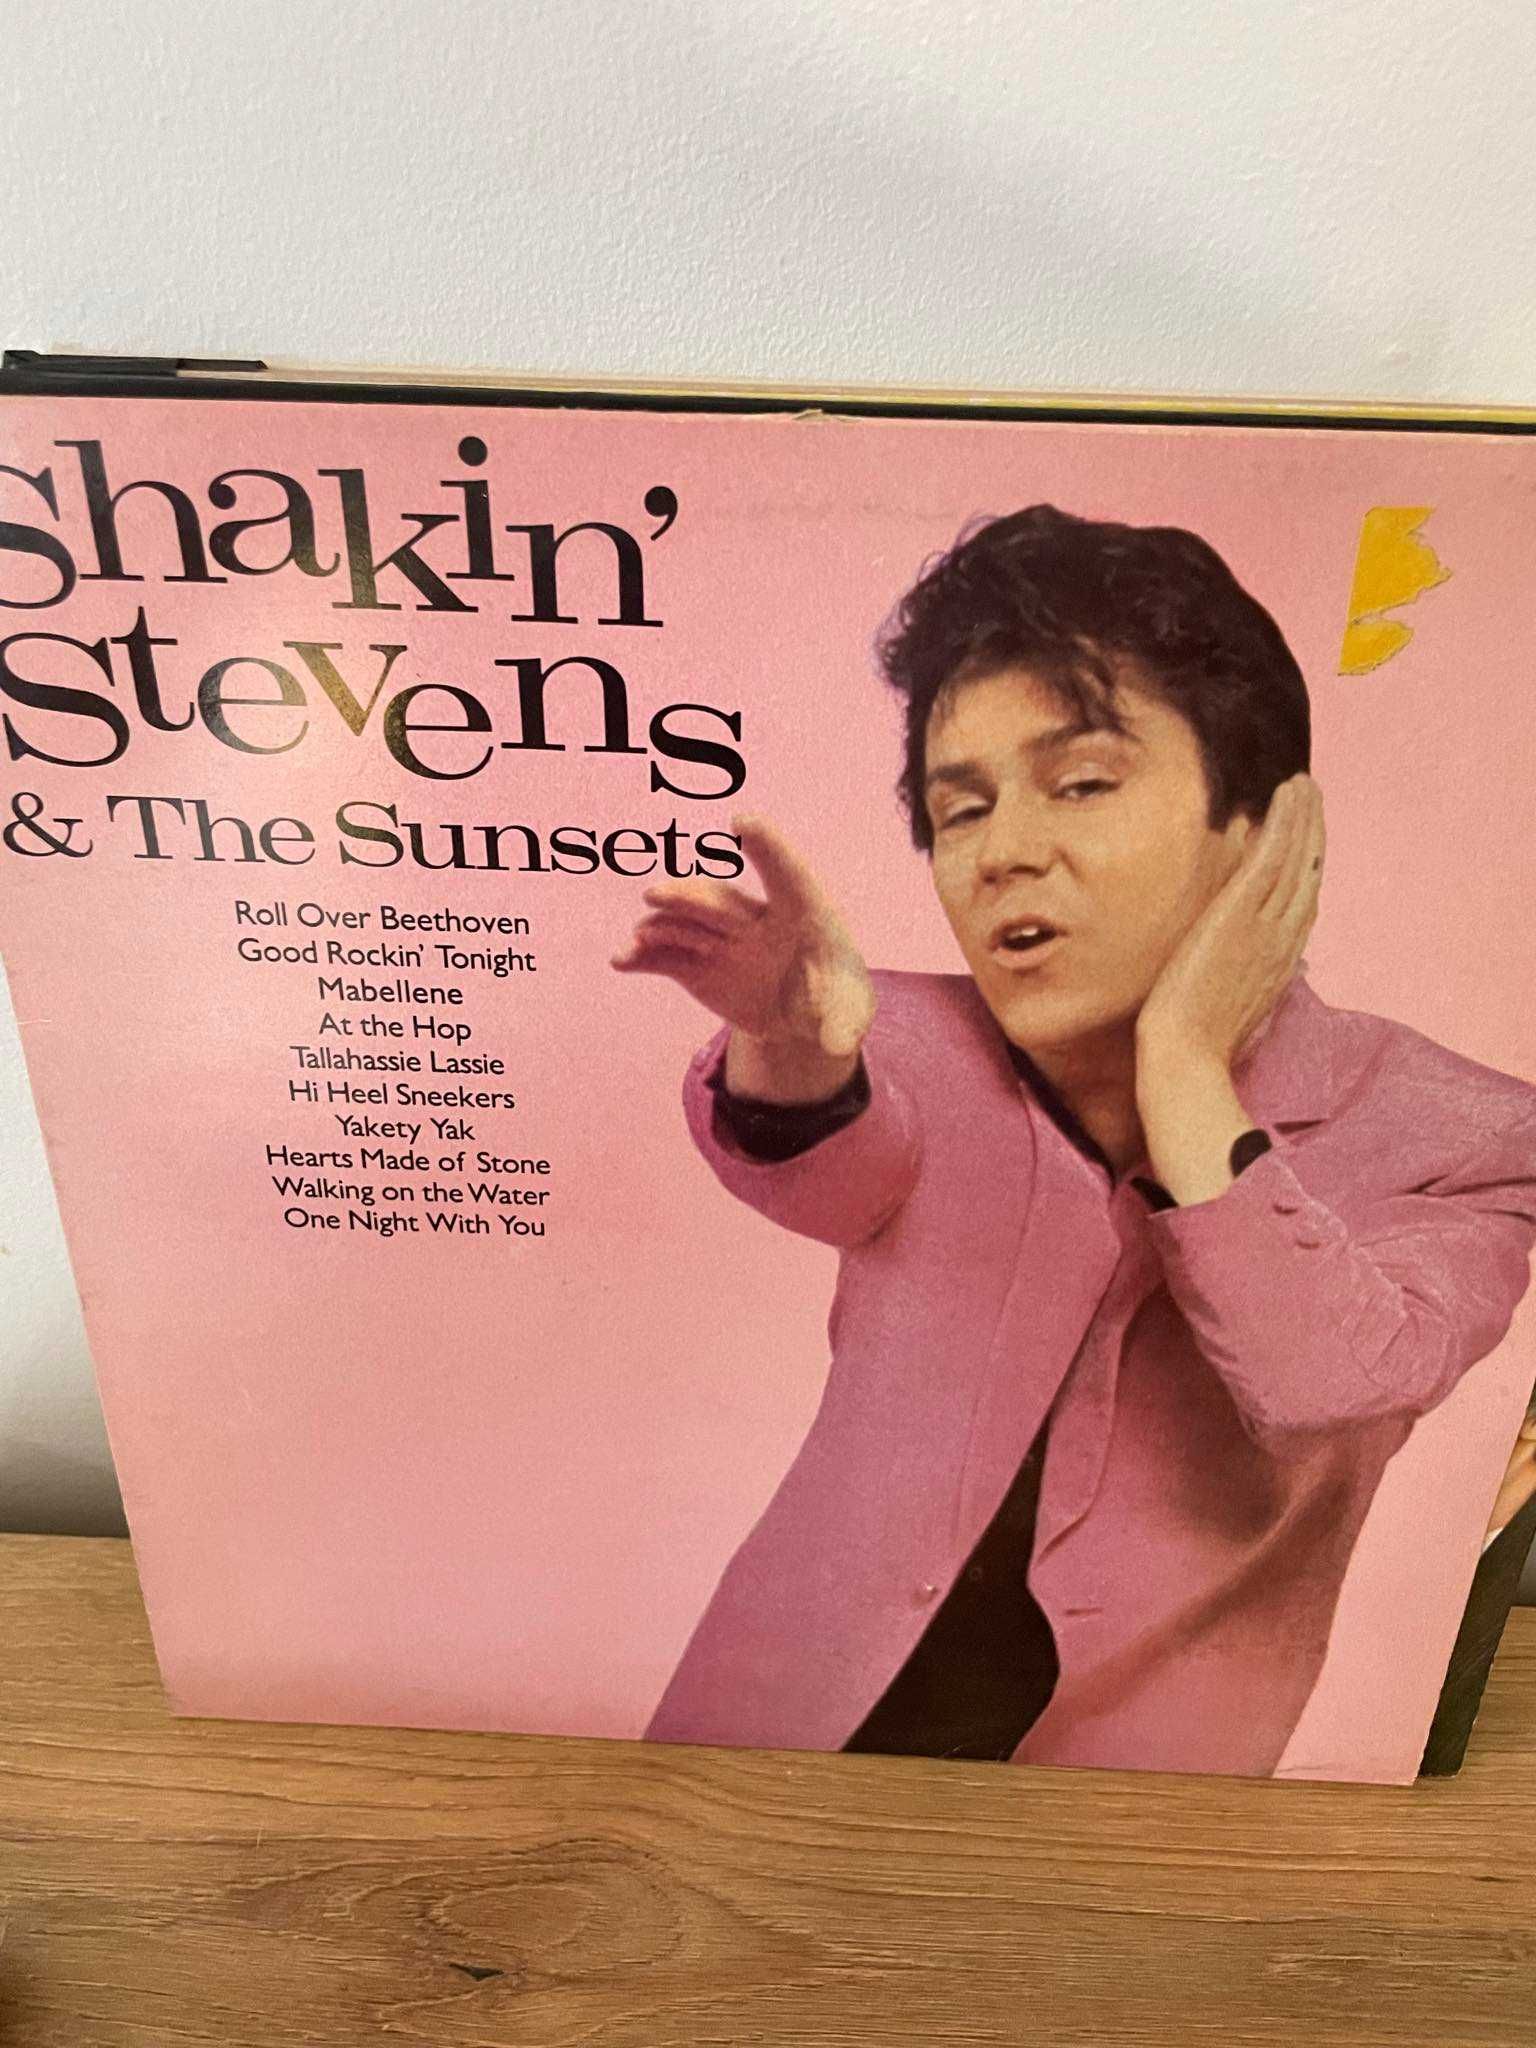 Shakin' Stevens & The Sunsets* – Shakin' Stevens & The Sunsets